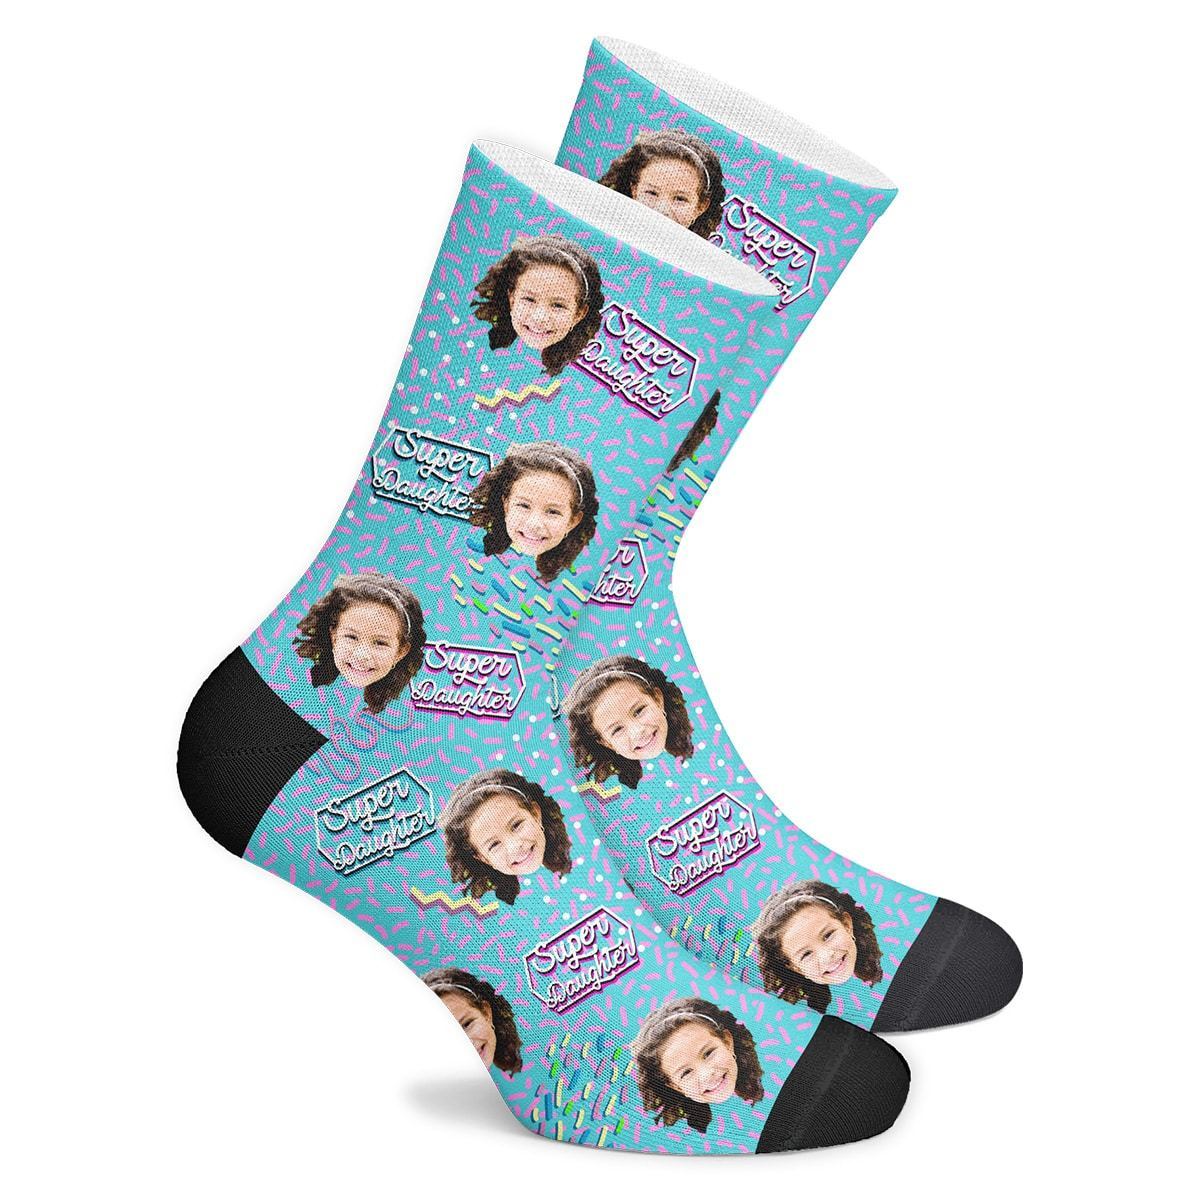 Customized Super Daughter Retro Socks